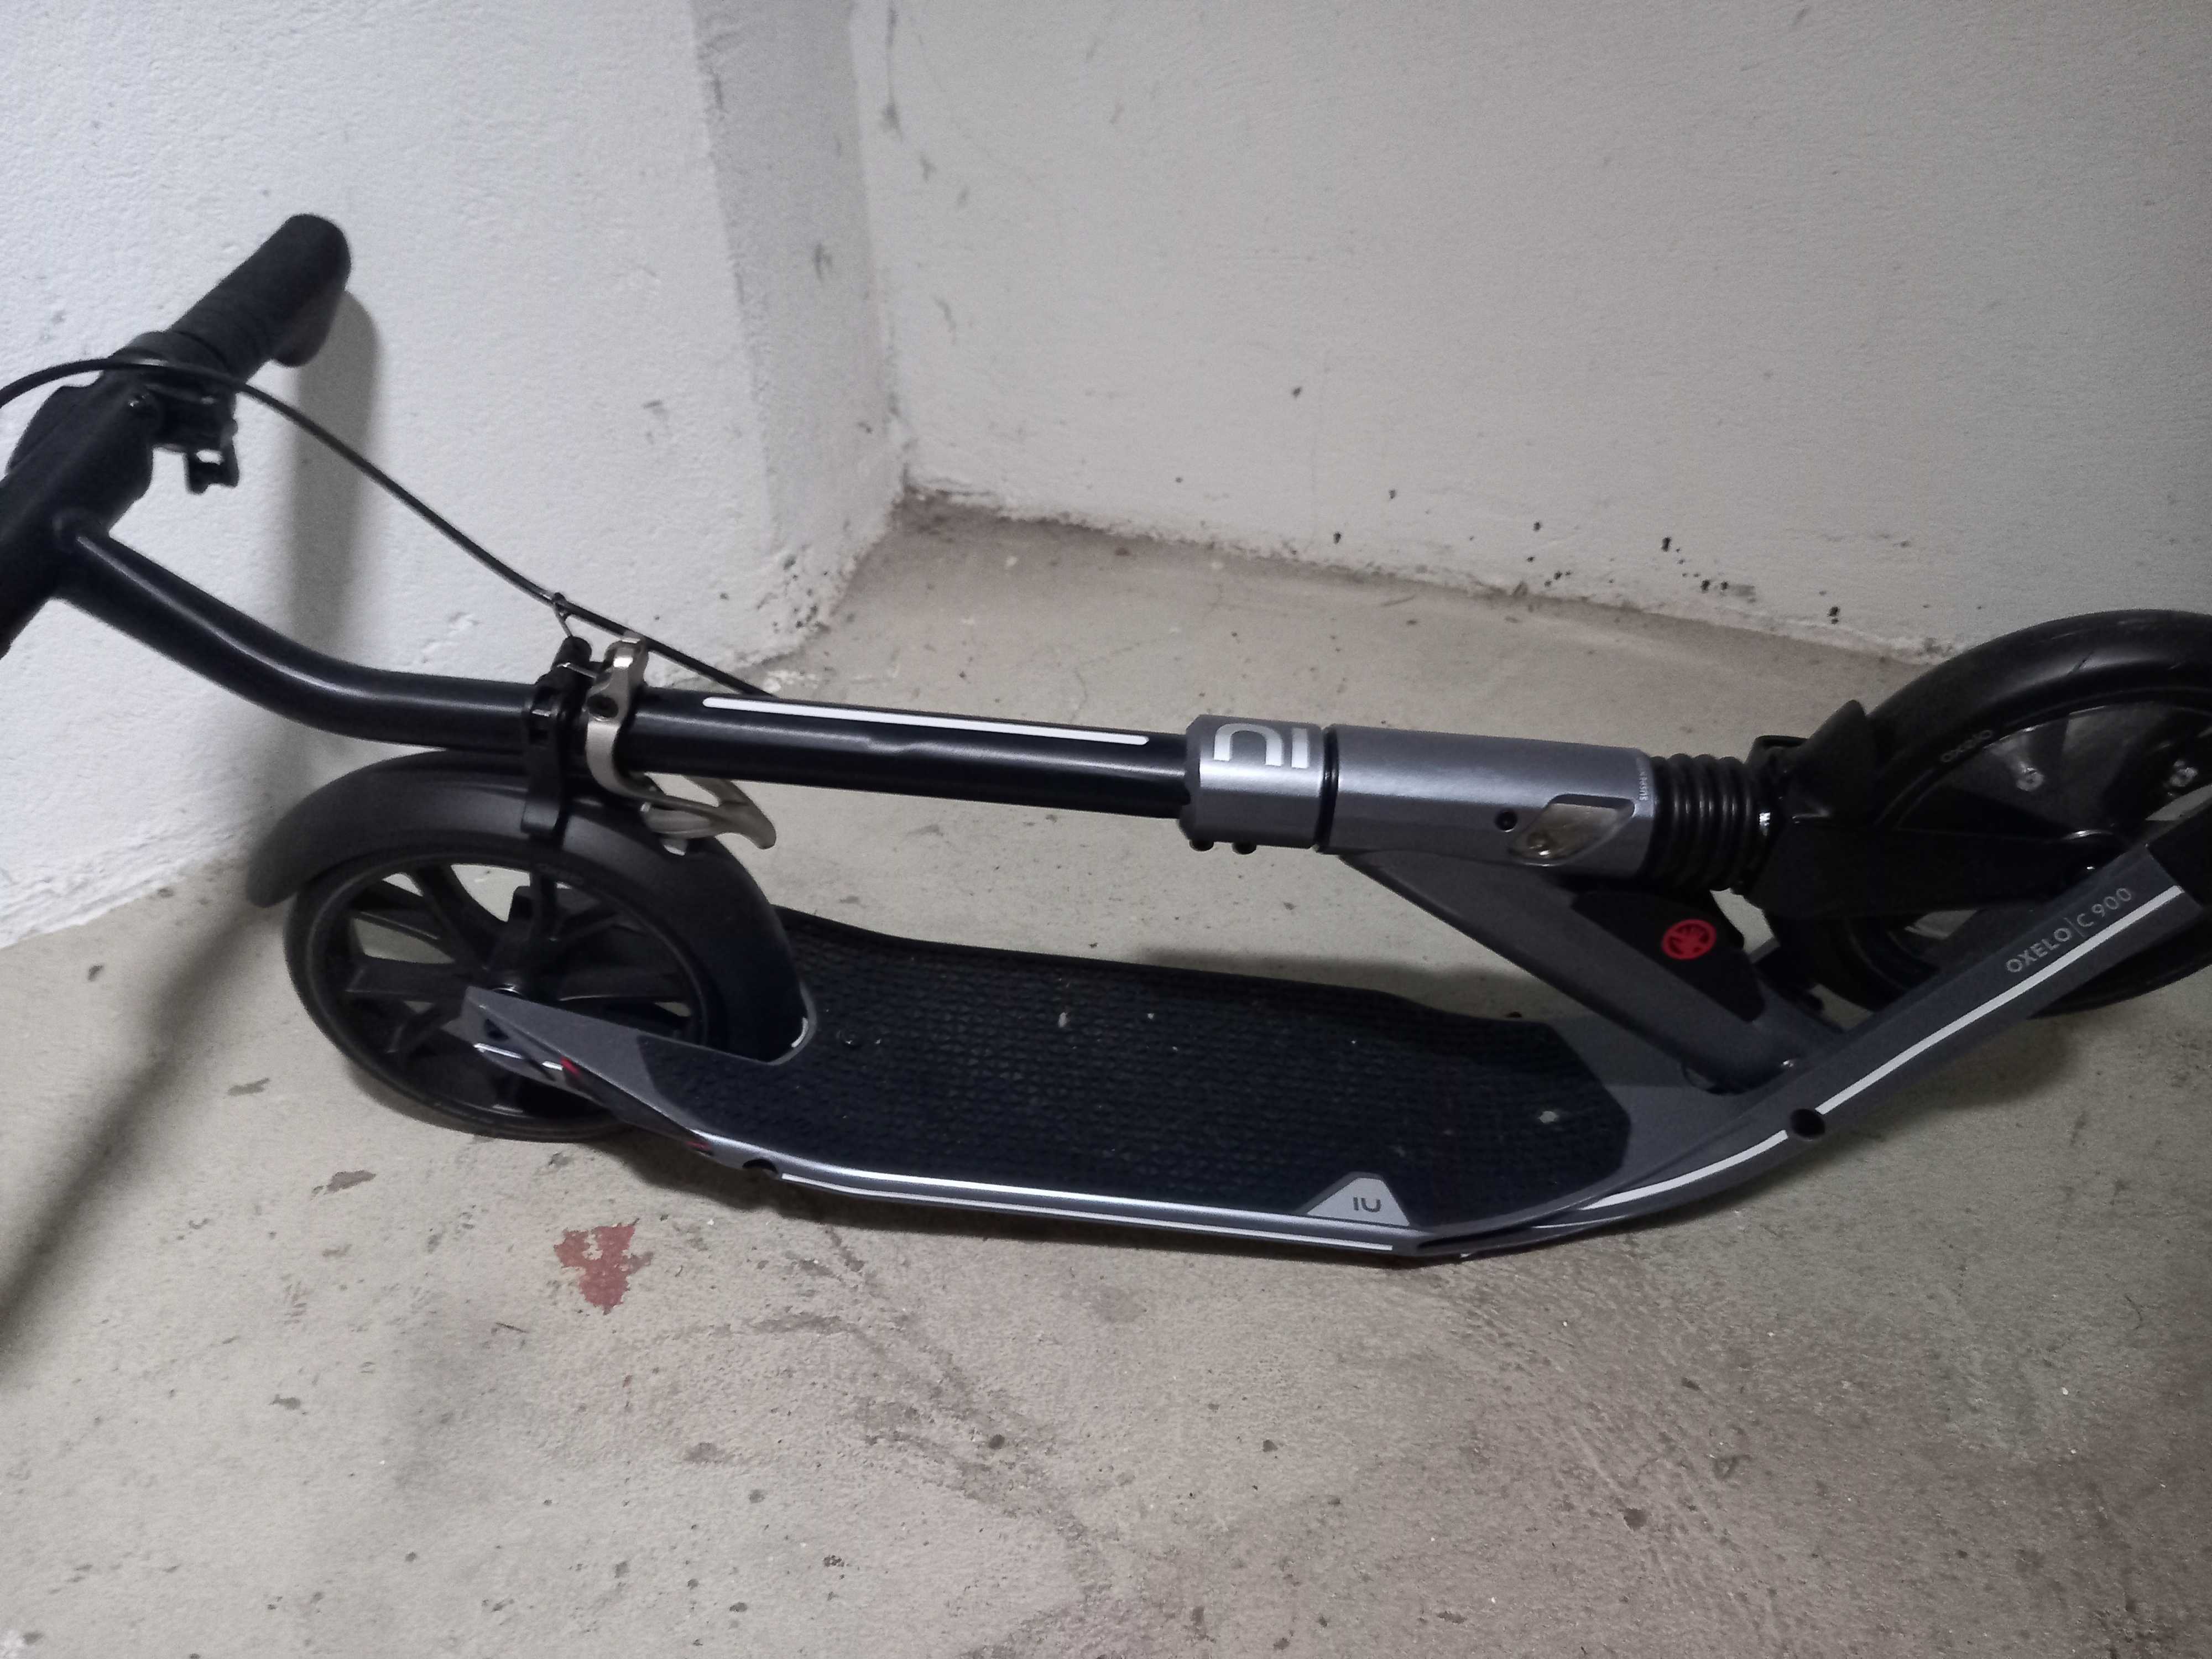 Vendo scooter manual completamente nova (sem uso)